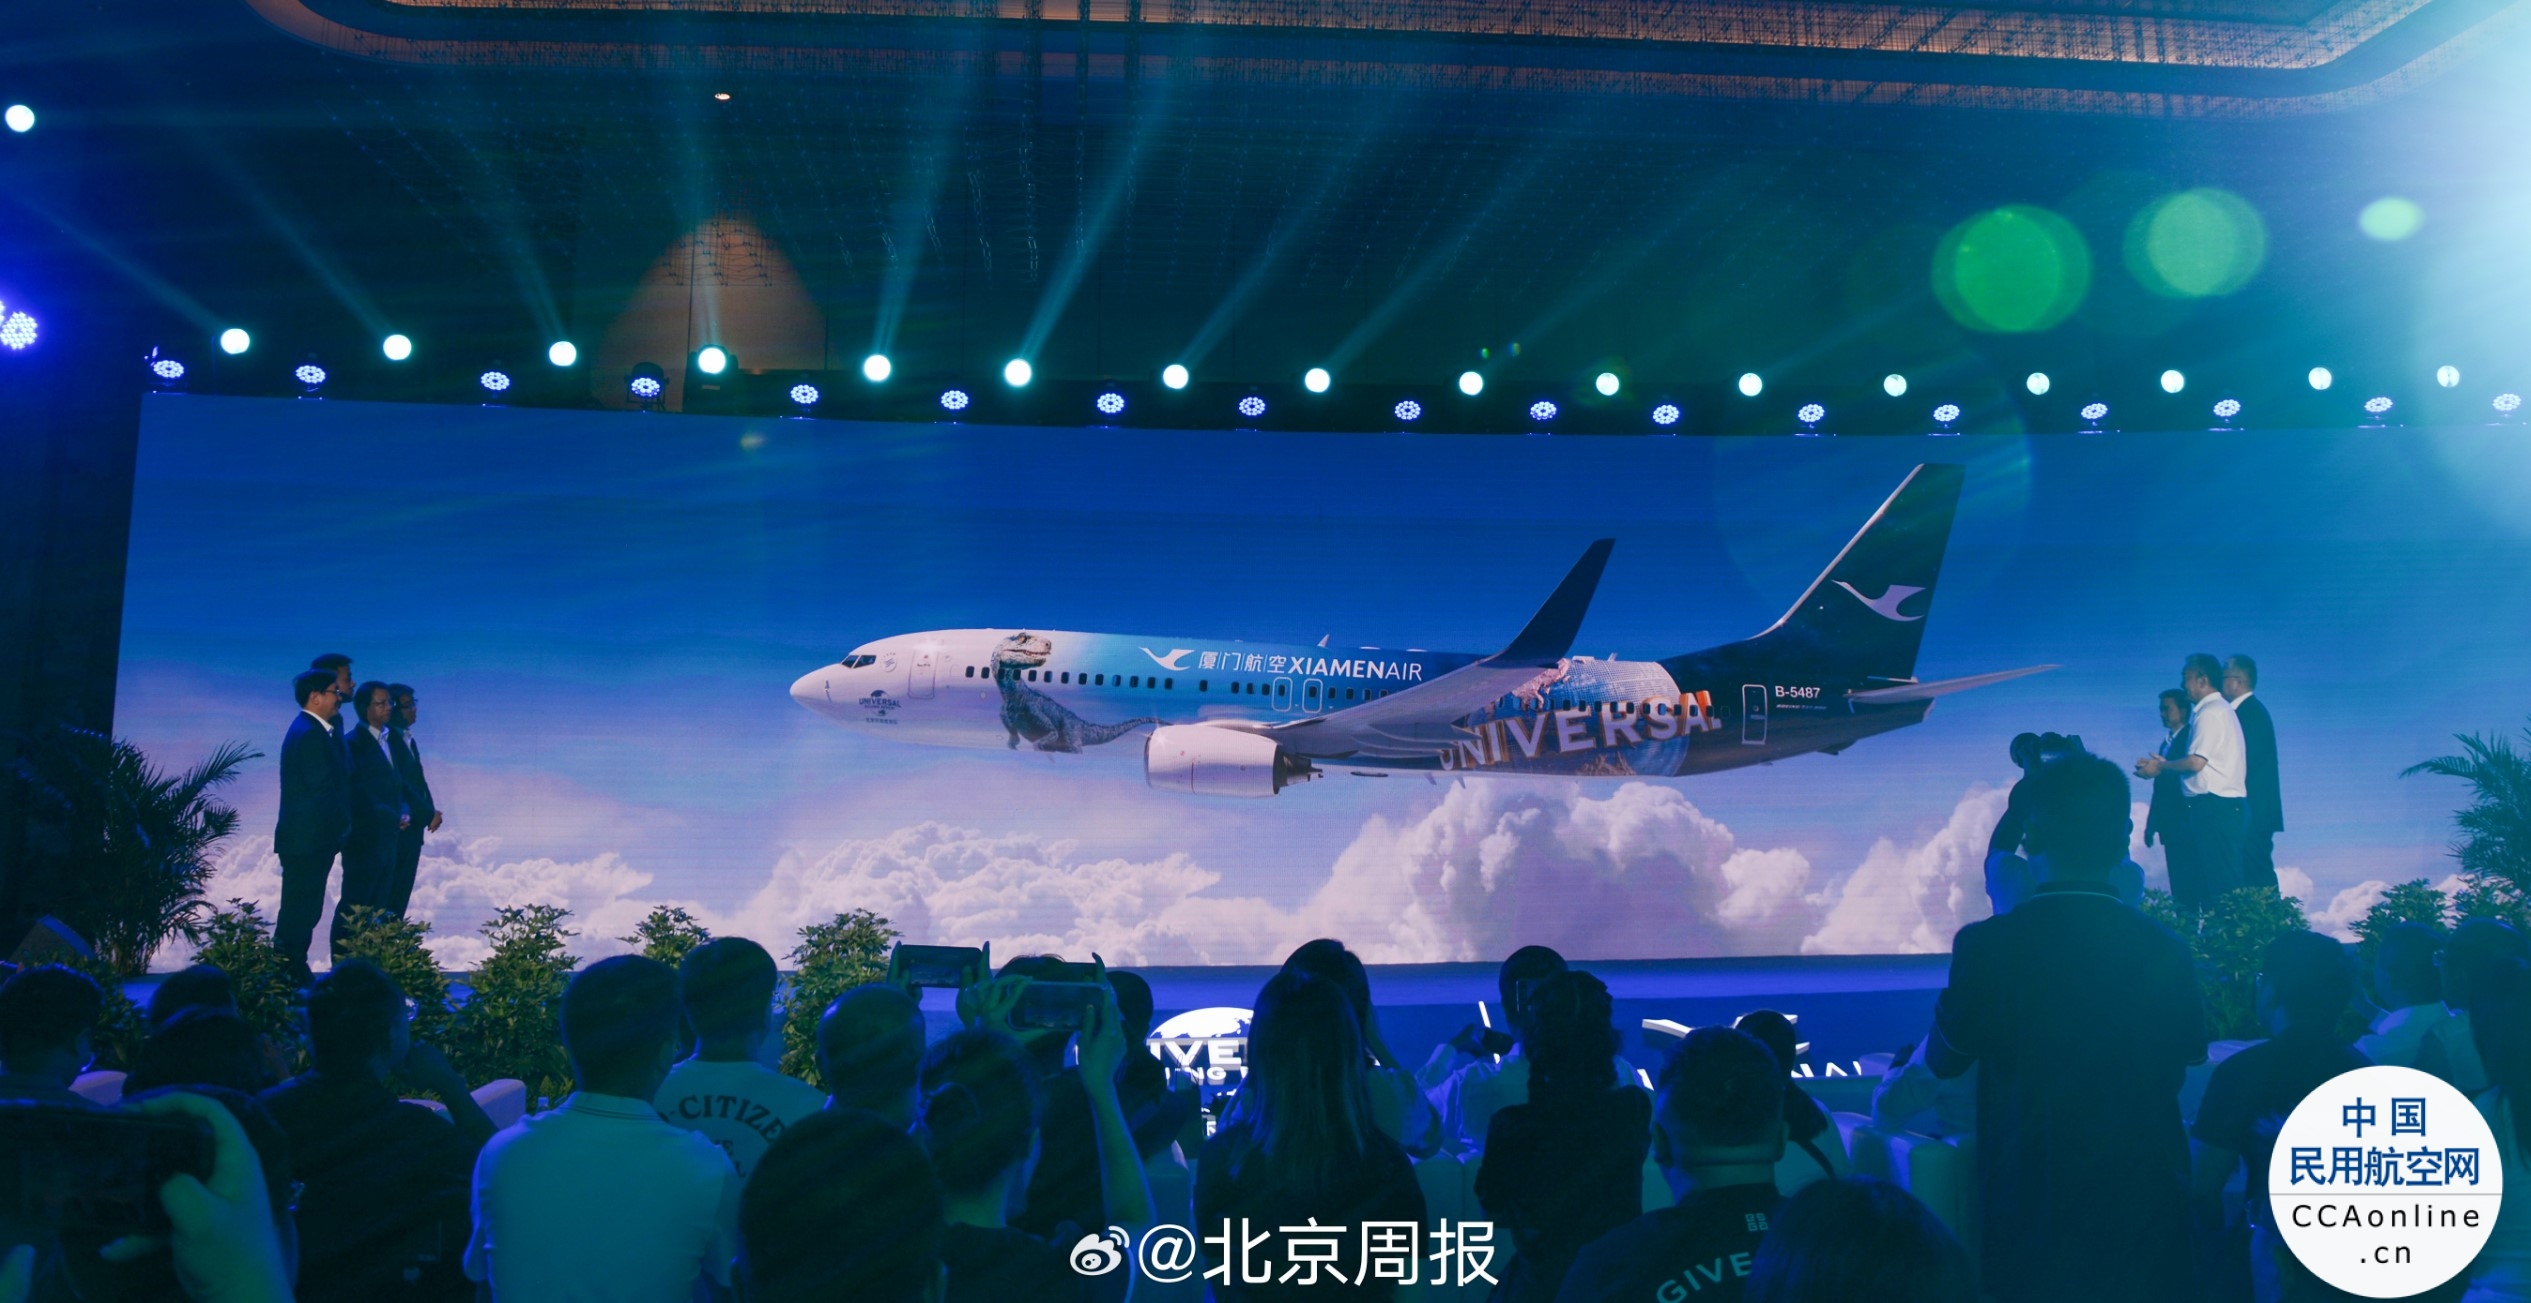 厦航与北京环球度假区签约 “侏罗纪世界”主题彩绘飞机亮相